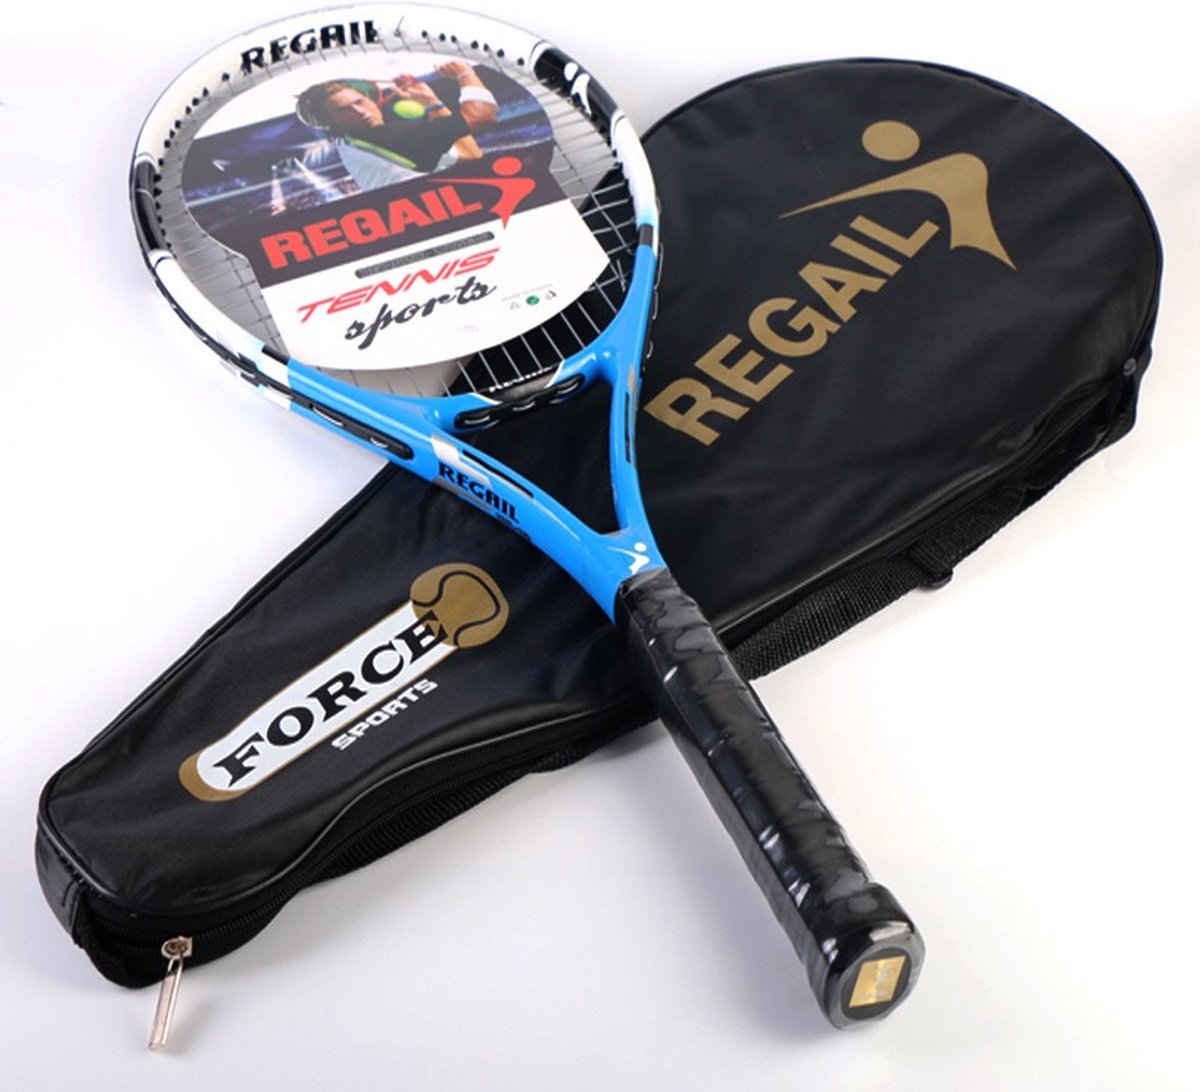 REGAIL Tennisracket - Tennisracket - Tennis - Voor wedstrijden - Blauw